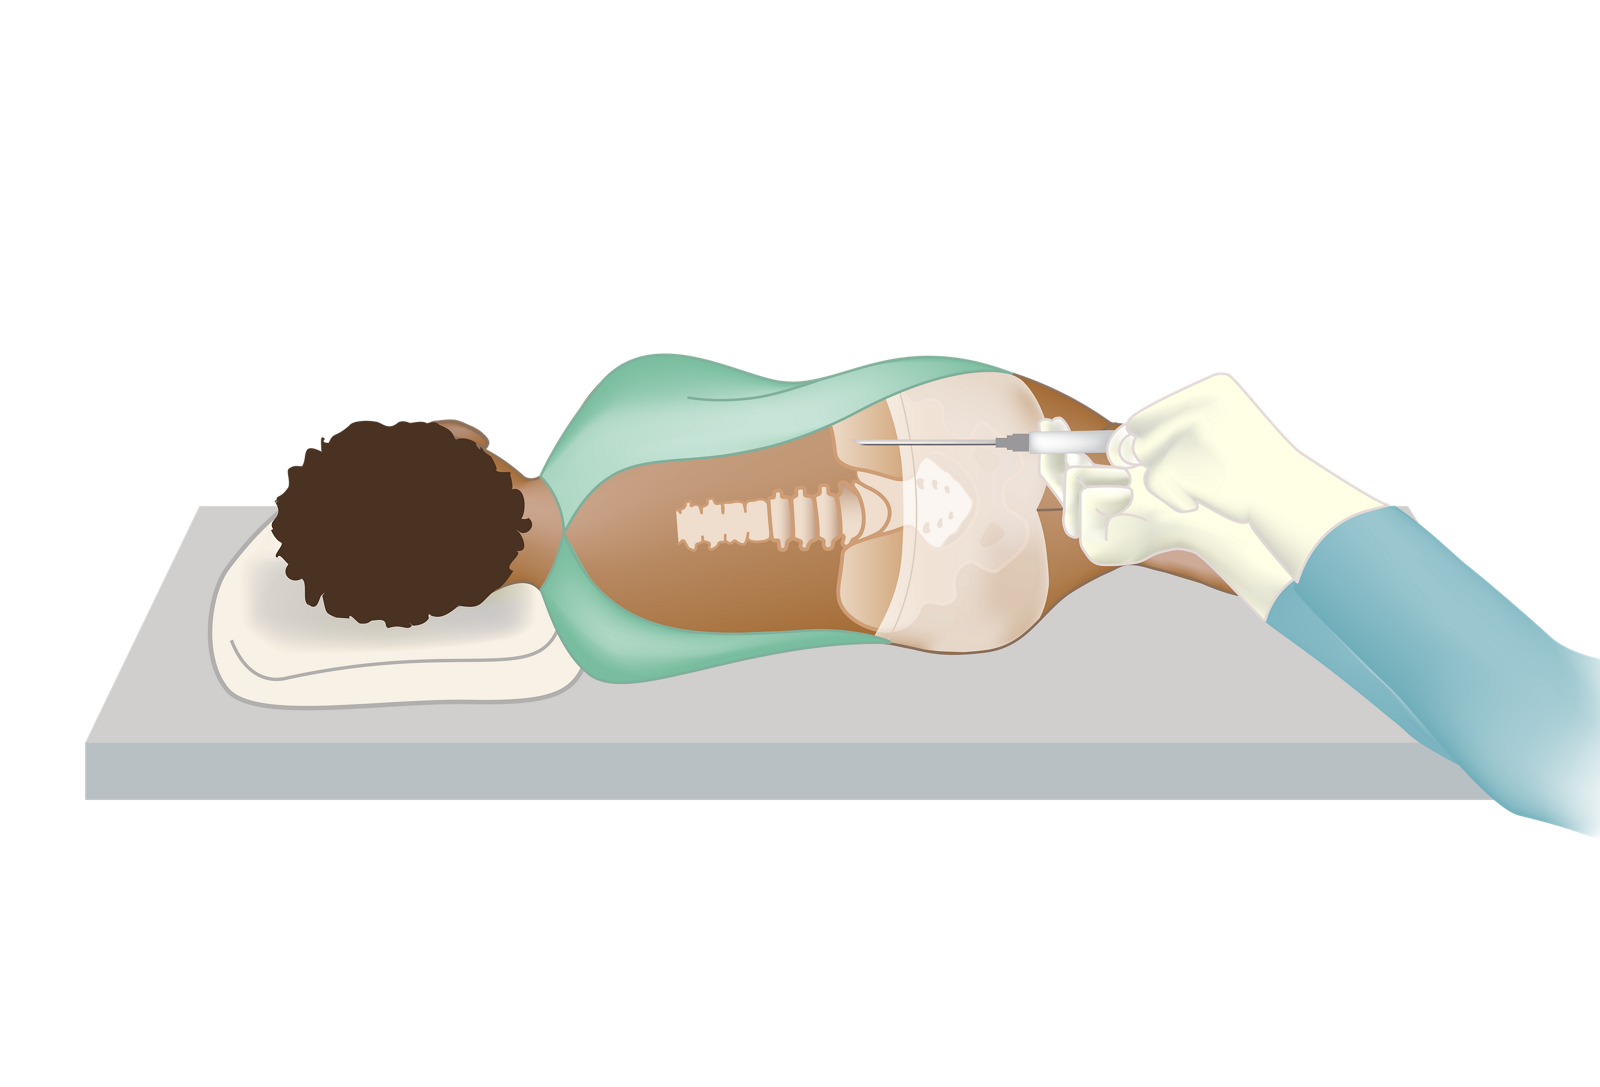 Пациент в положении лежа на боку с иглой, введенной в тазовую кость для проведения процедуры аспирации костного мозга